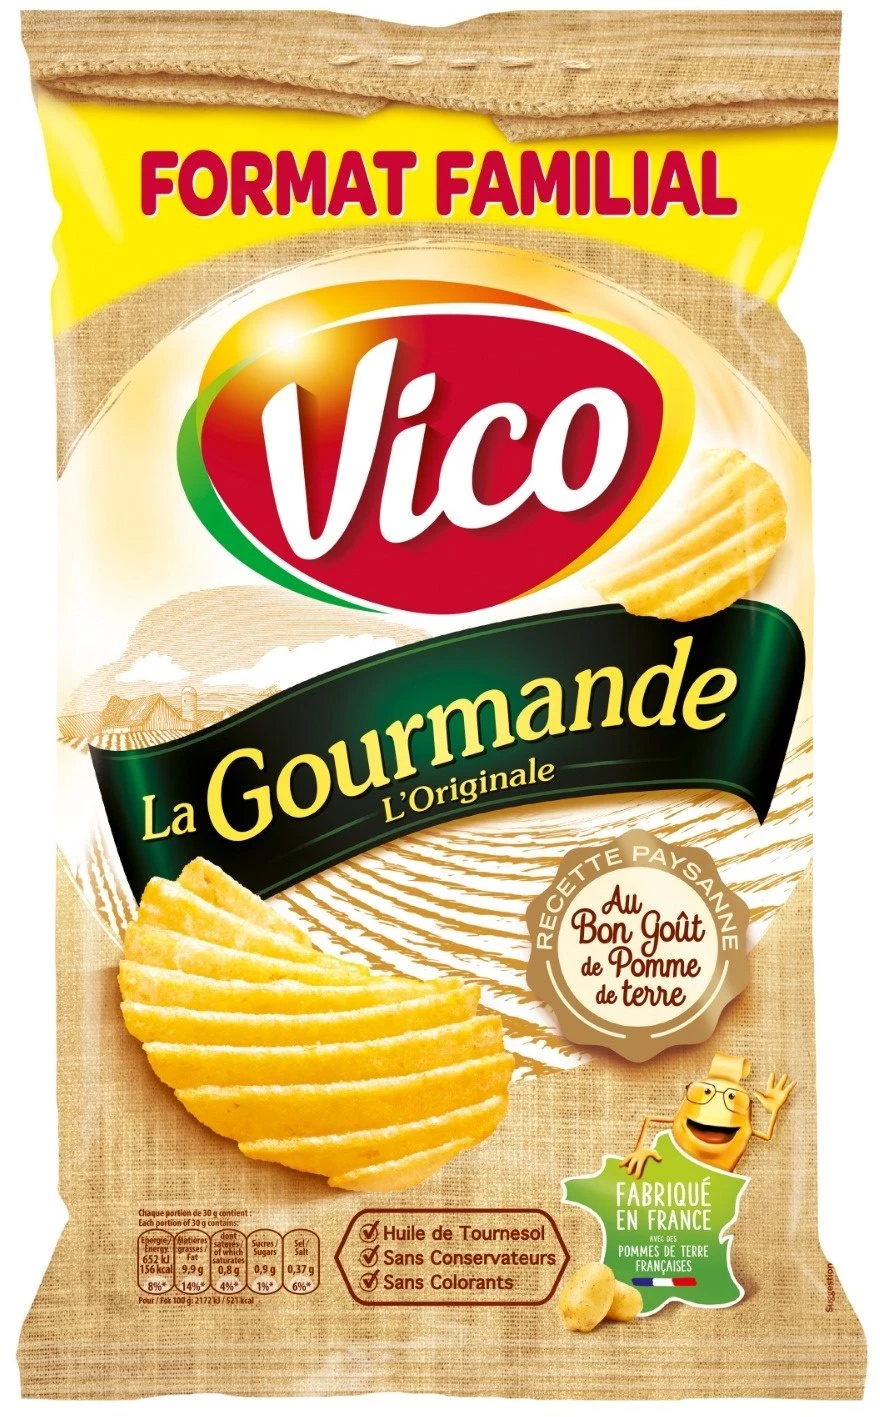 Chips La Gourmande L'Origina le, 200g - VICO